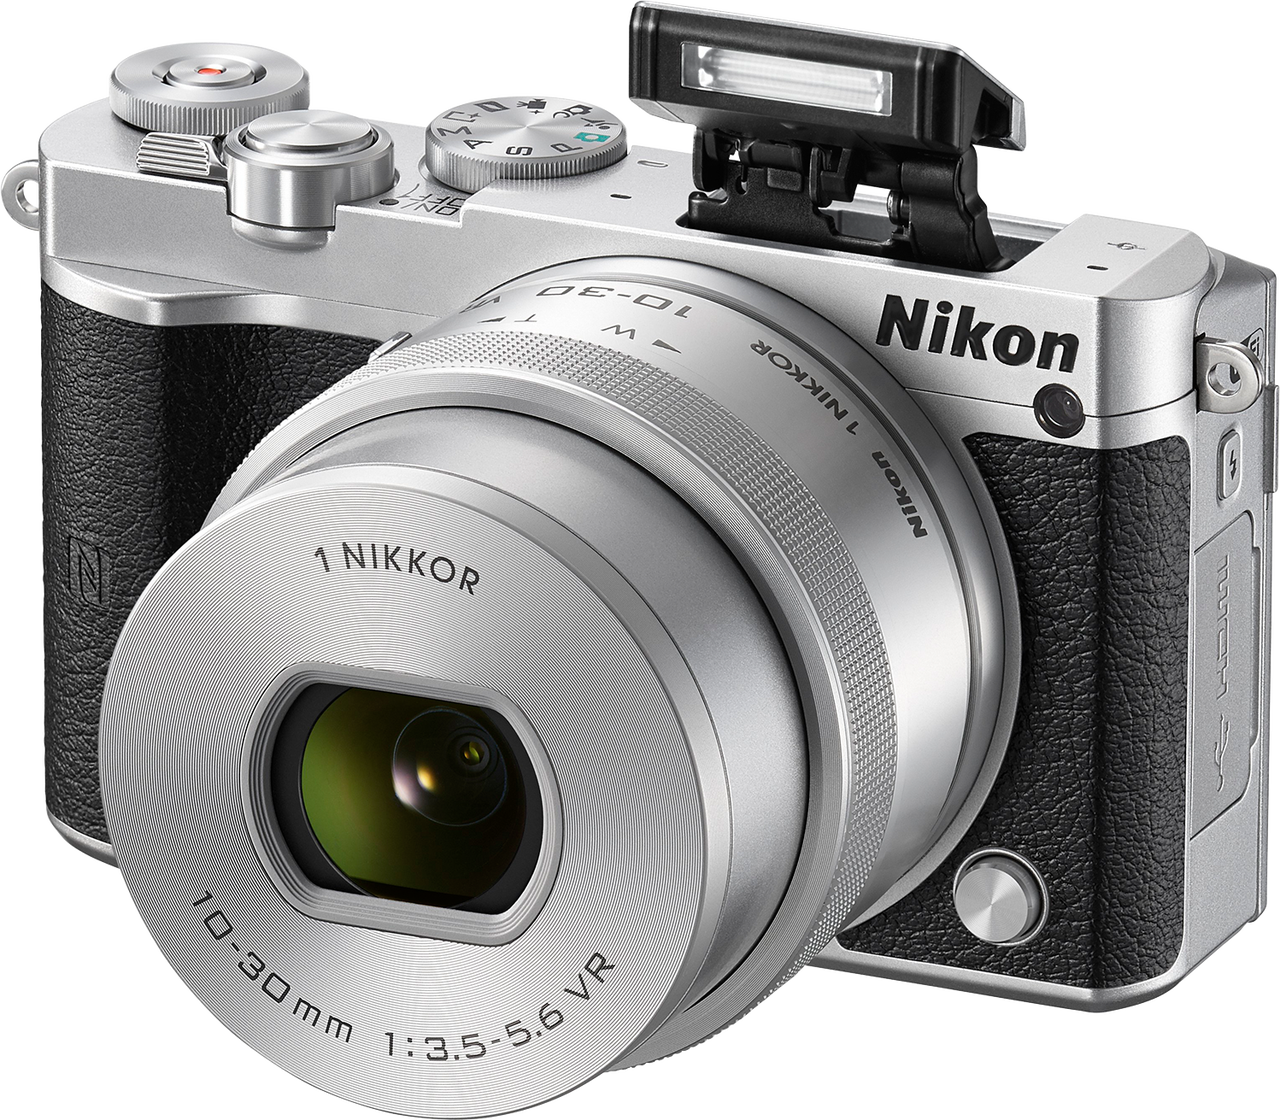 Nikon 1 J5 to elegancki bezlusterkowiec, który zachwyca jakością wykonania